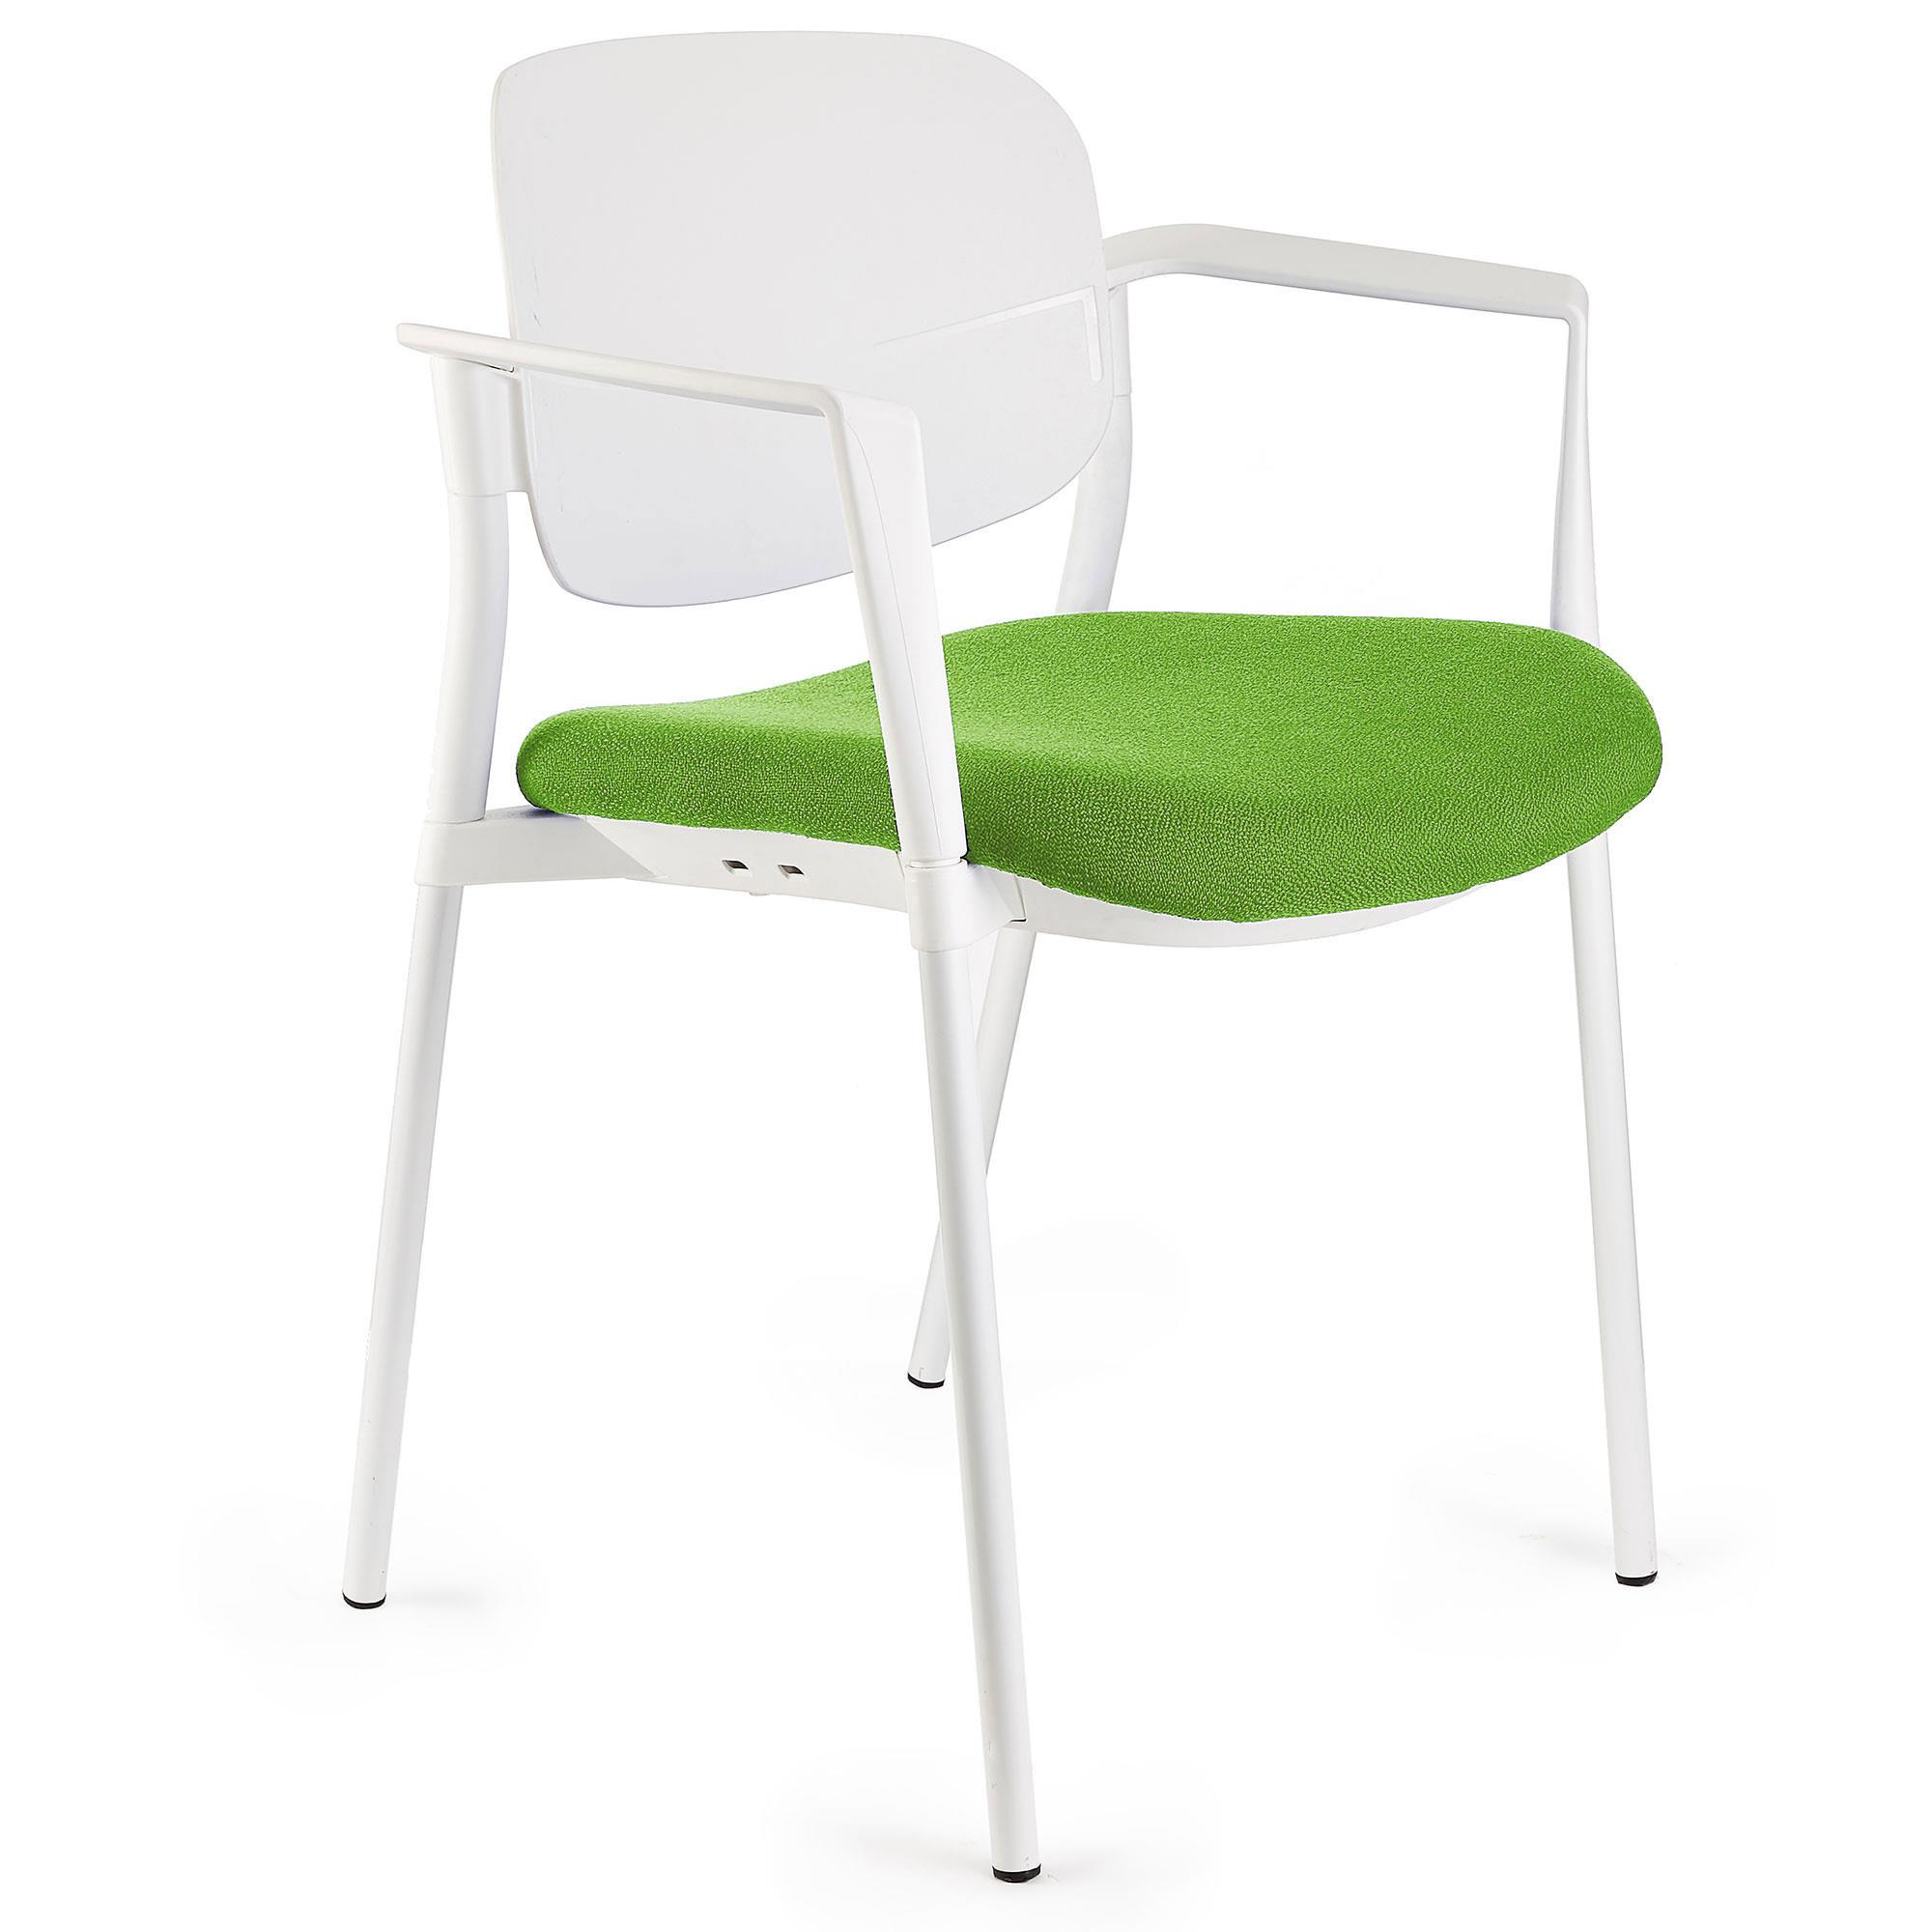 Konferenzstuhl ERIC, bequem und praktisch, stapelbar, Farbe Limettengrün